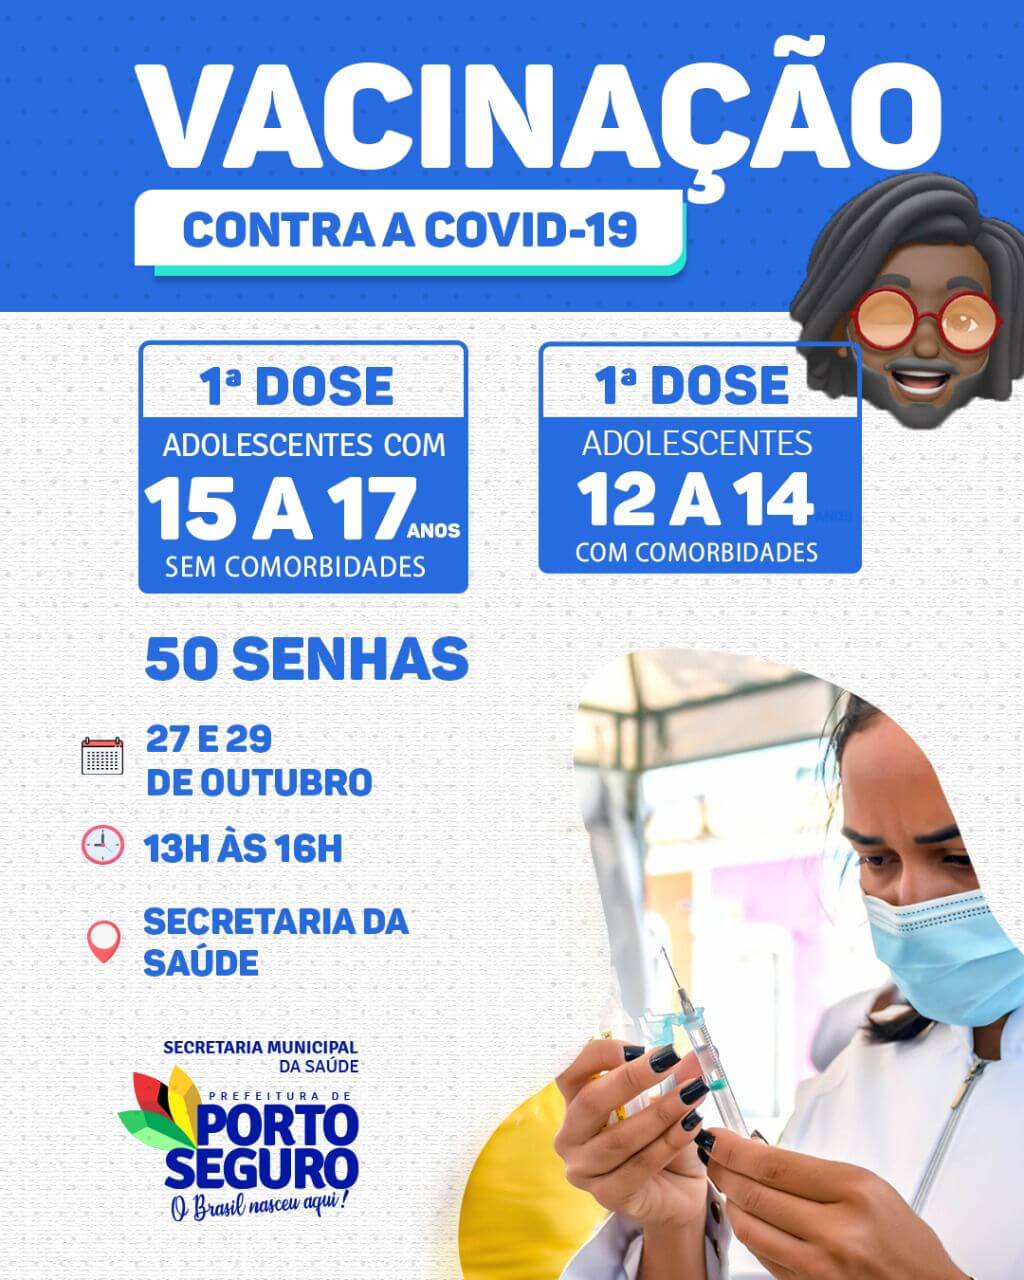 Porto Seguro: Cronograma de Vacinação contra a Covid-19; de 27 e 29 de outubro 5